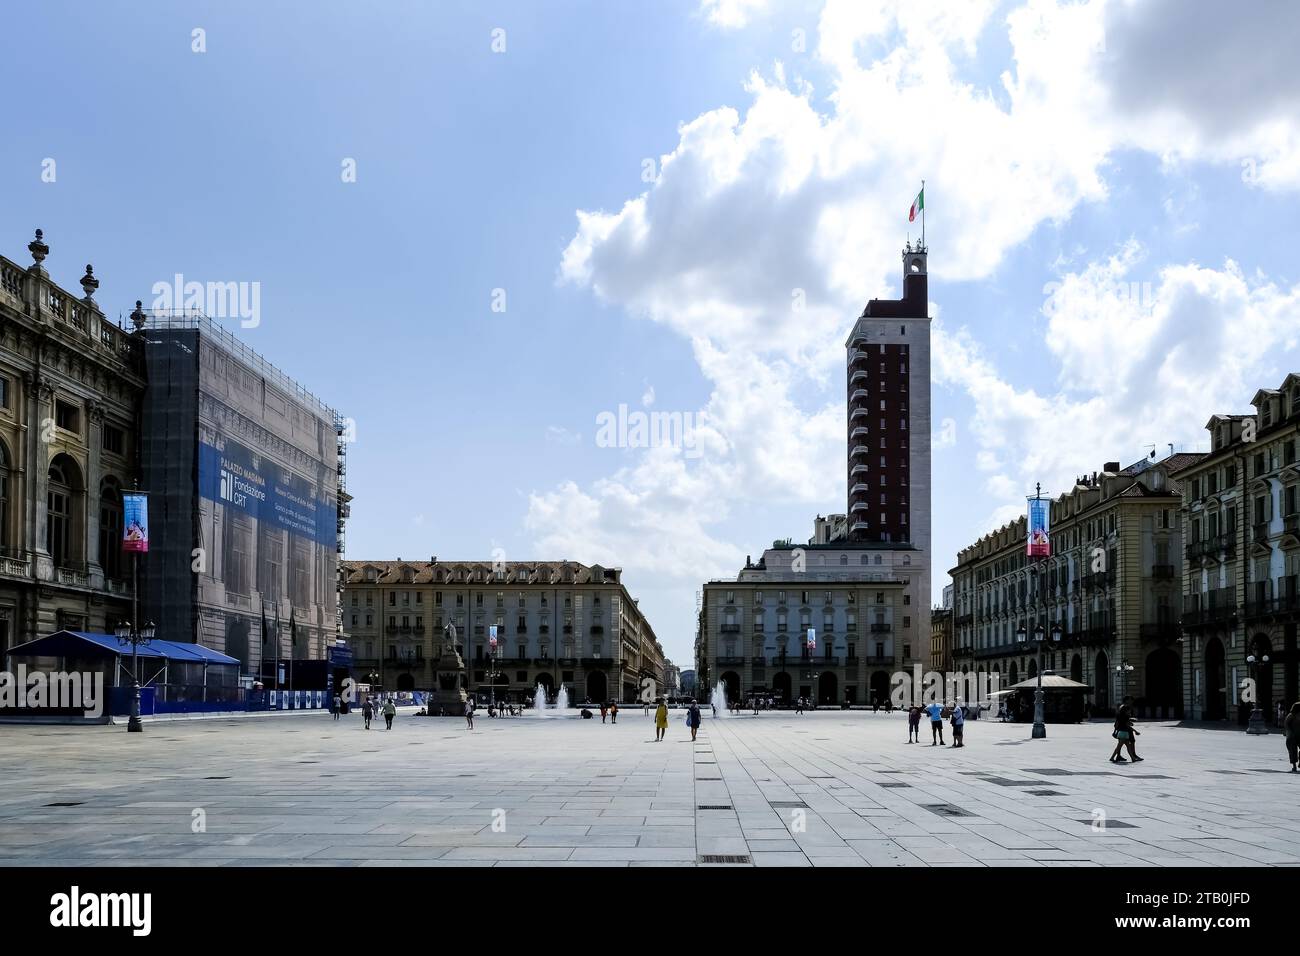 Blick auf die Piazza Castello, einen prominenten Stadtplatz im Stadtzentrum von Turin, Italien, mit mehreren Sehenswürdigkeiten, Museen, Theatern und Cafés. Stockfoto